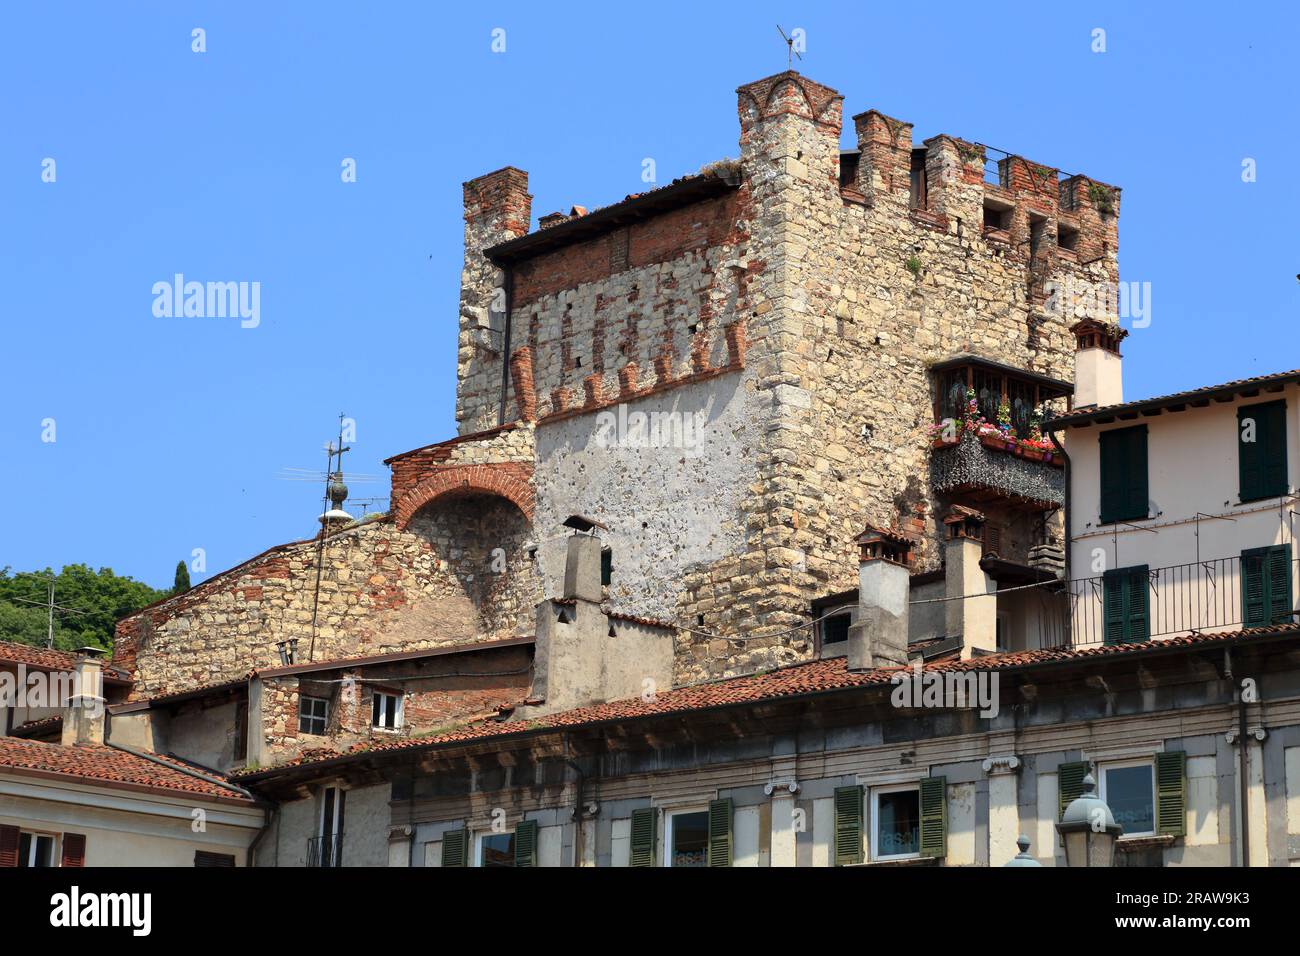 Medieval town gate tower, Torre di Porta Bruciata, Brescia, Italy Stock Photo